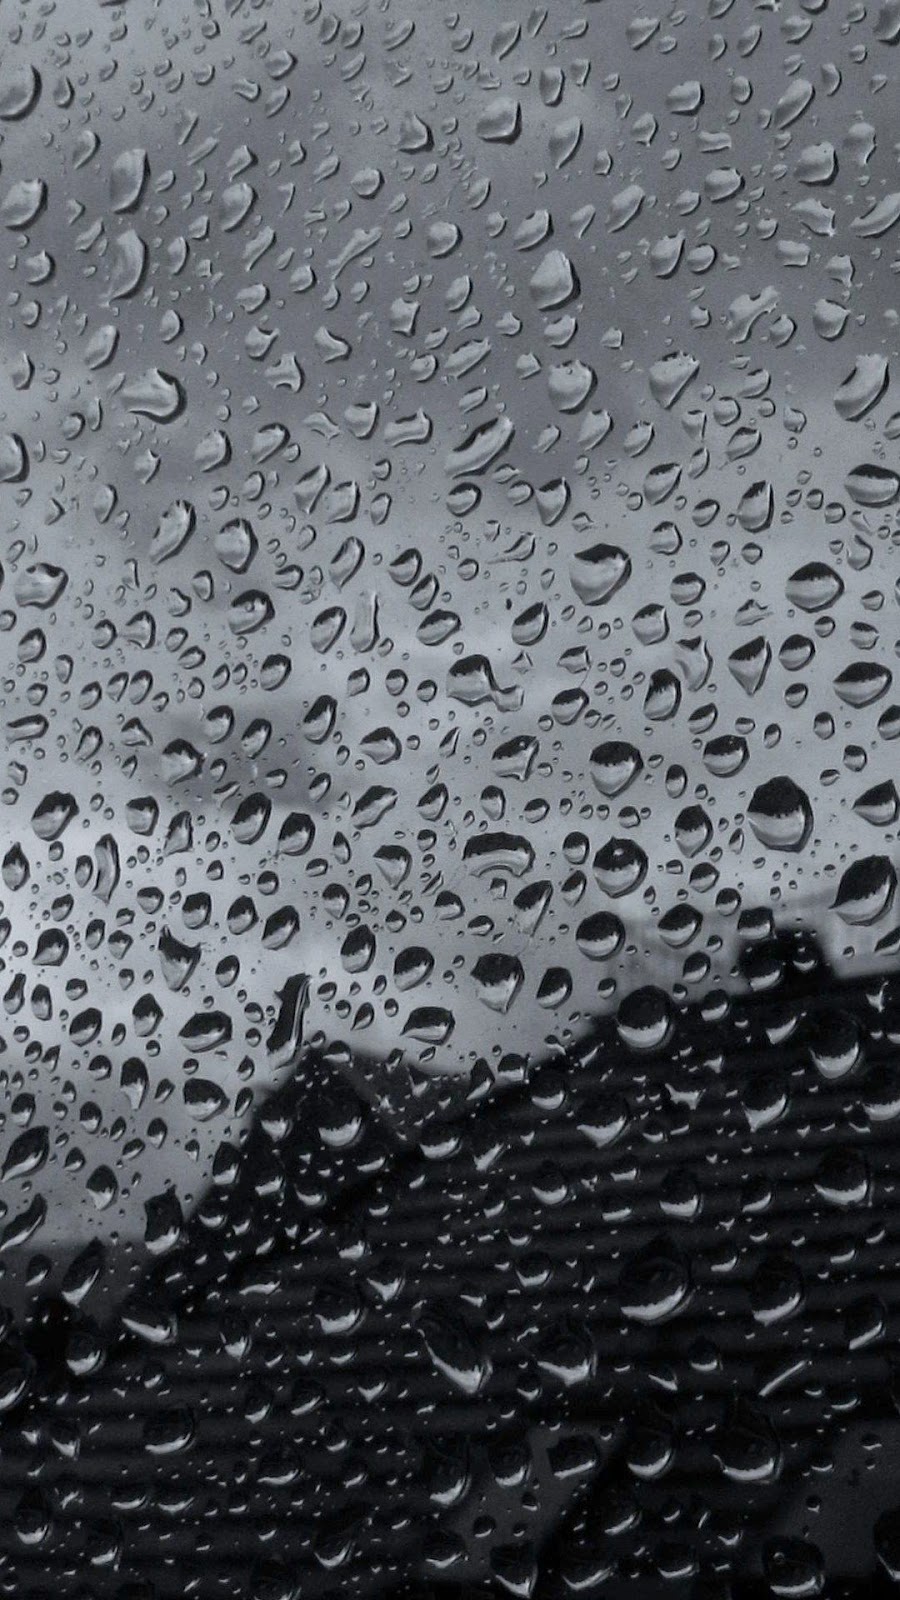 carta da parati in vetro nero,acqua,pioggerella,far cadere,pioggia,umidità